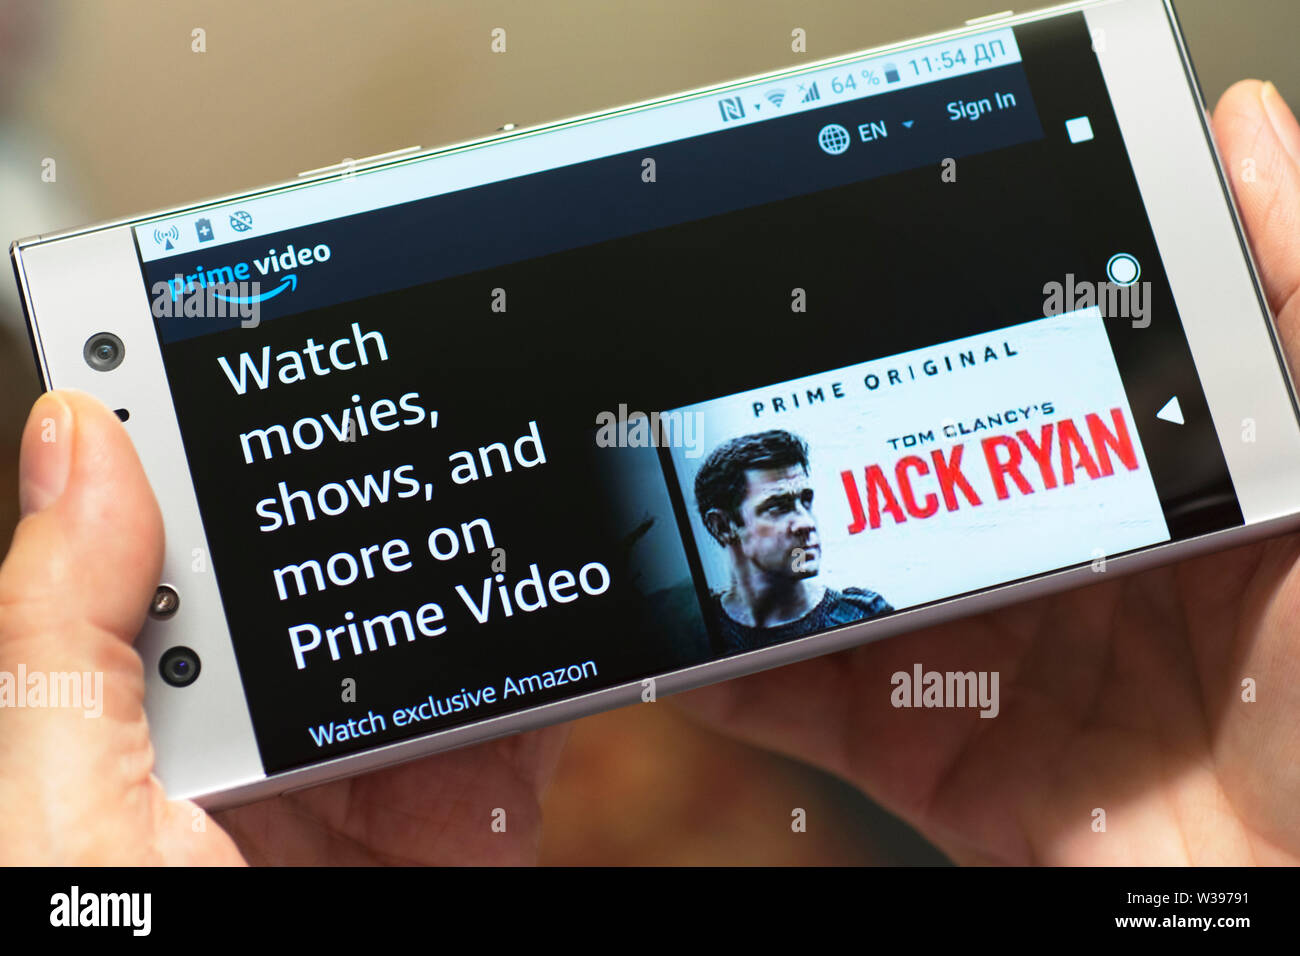 Amazon premier vidéo, films streaming, site Web, affiche sur l'écran du smartphone Android Mobile Phone Banque D'Images